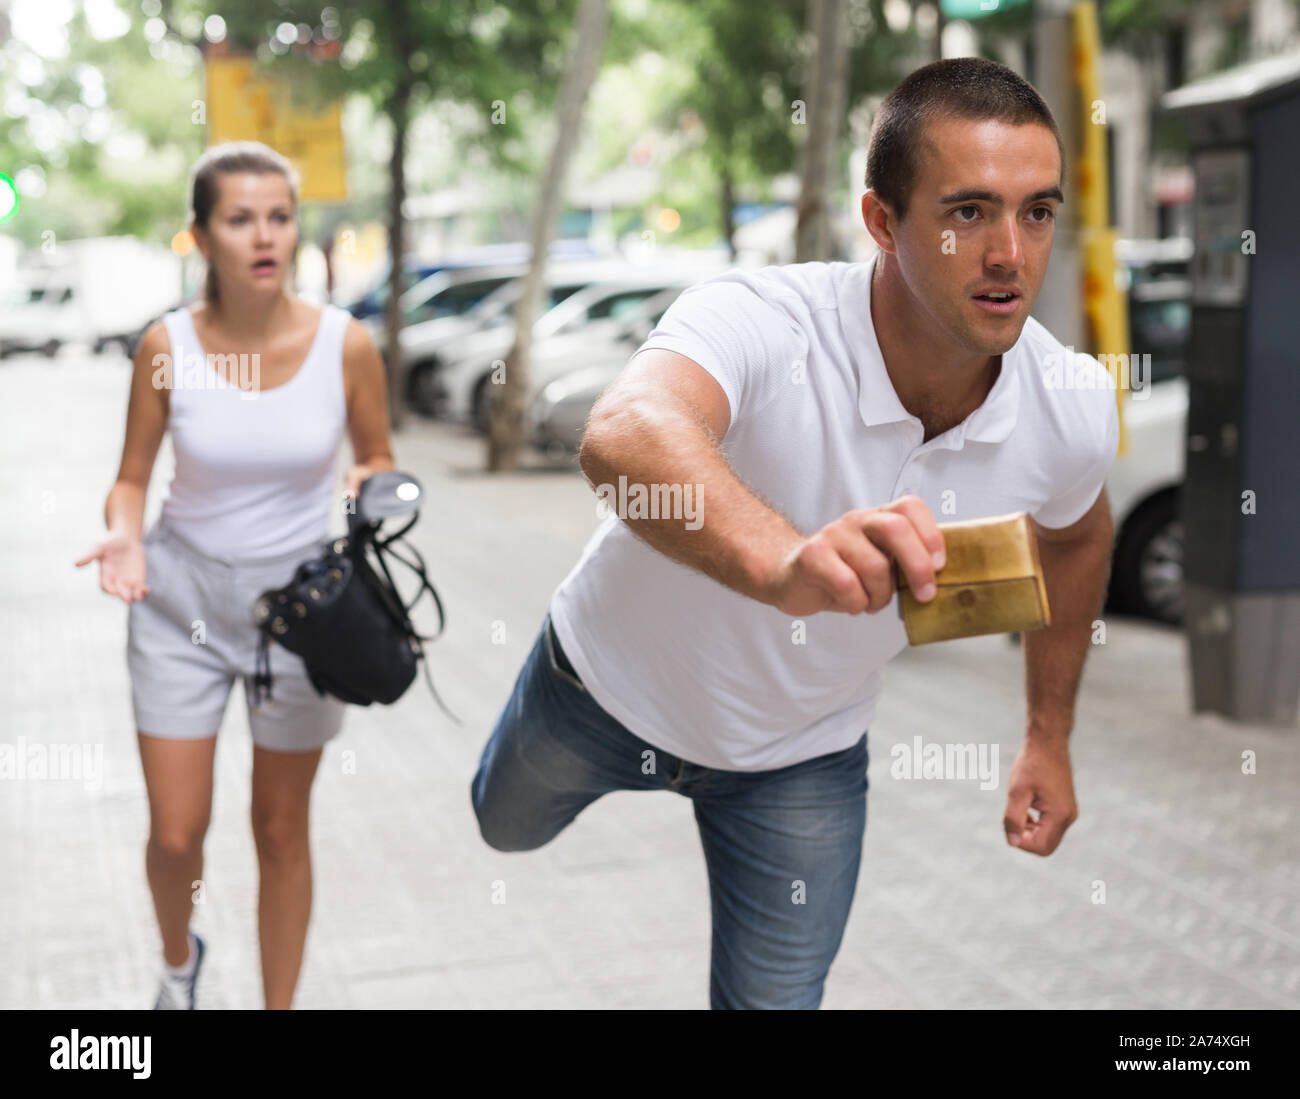 Le vol de sac à main de voleur homme femme peur sur street Photo Stock -  Alamy